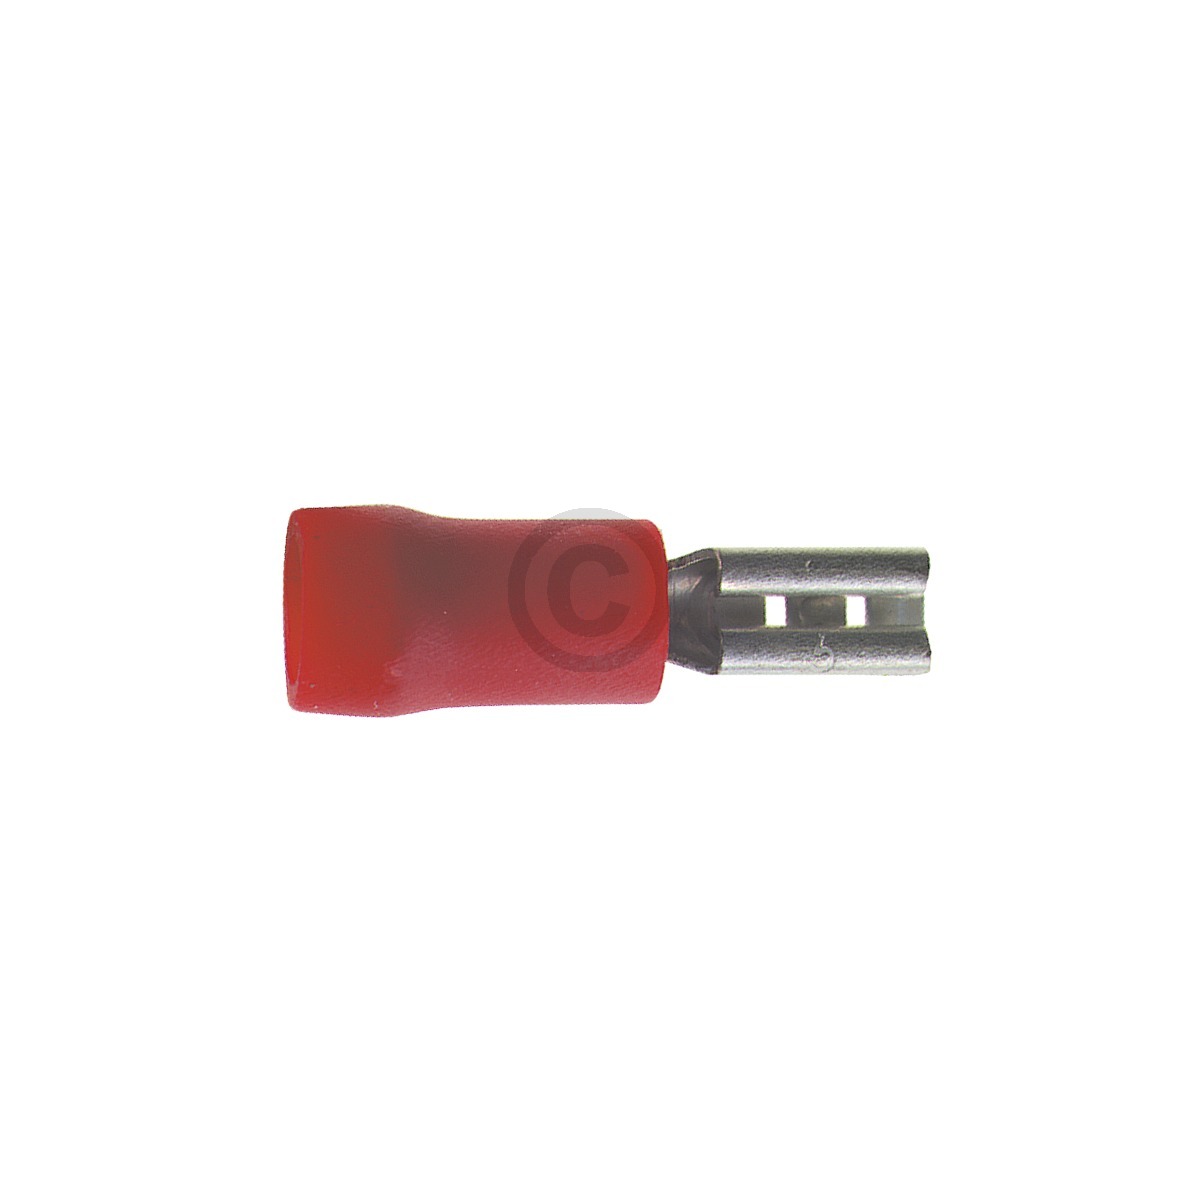 Flachsteckhülse rot 6,3mm für 0,5 - 1,0 mm² Aderquerschnitt 1Stk